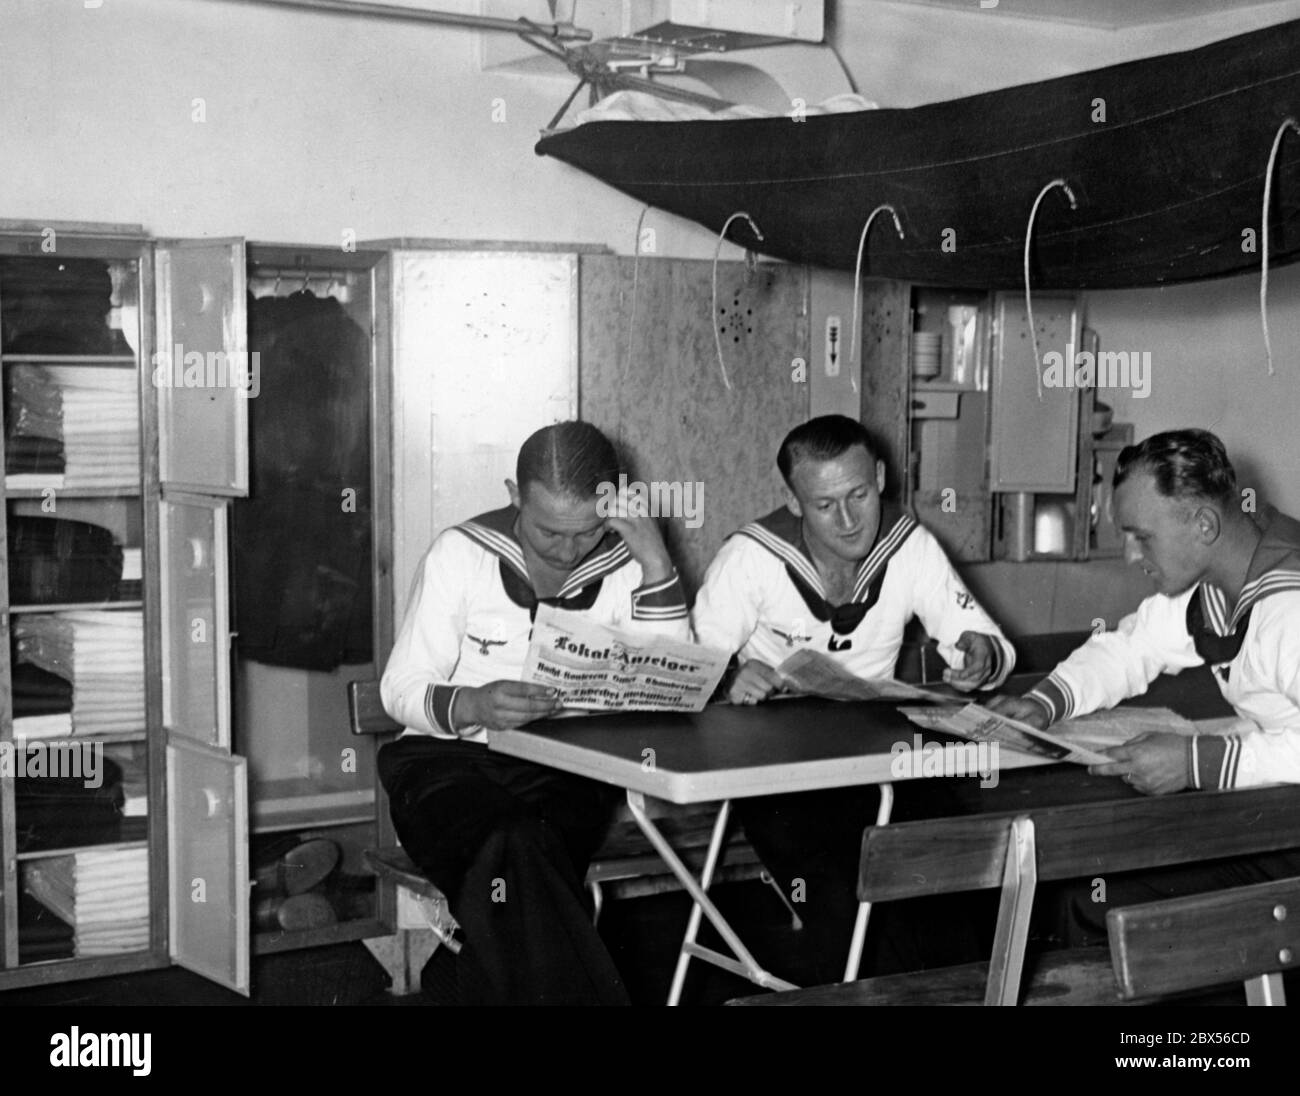 Alla mostra 'Gesundes Leben - Frohes Schaffen' ( vita sana - lavoro felice) è esposta una sala d'equipaggio in una nave da guerra dove i marinai possono leggere giornali come il Lokal-Anzeiger. Foto Stock